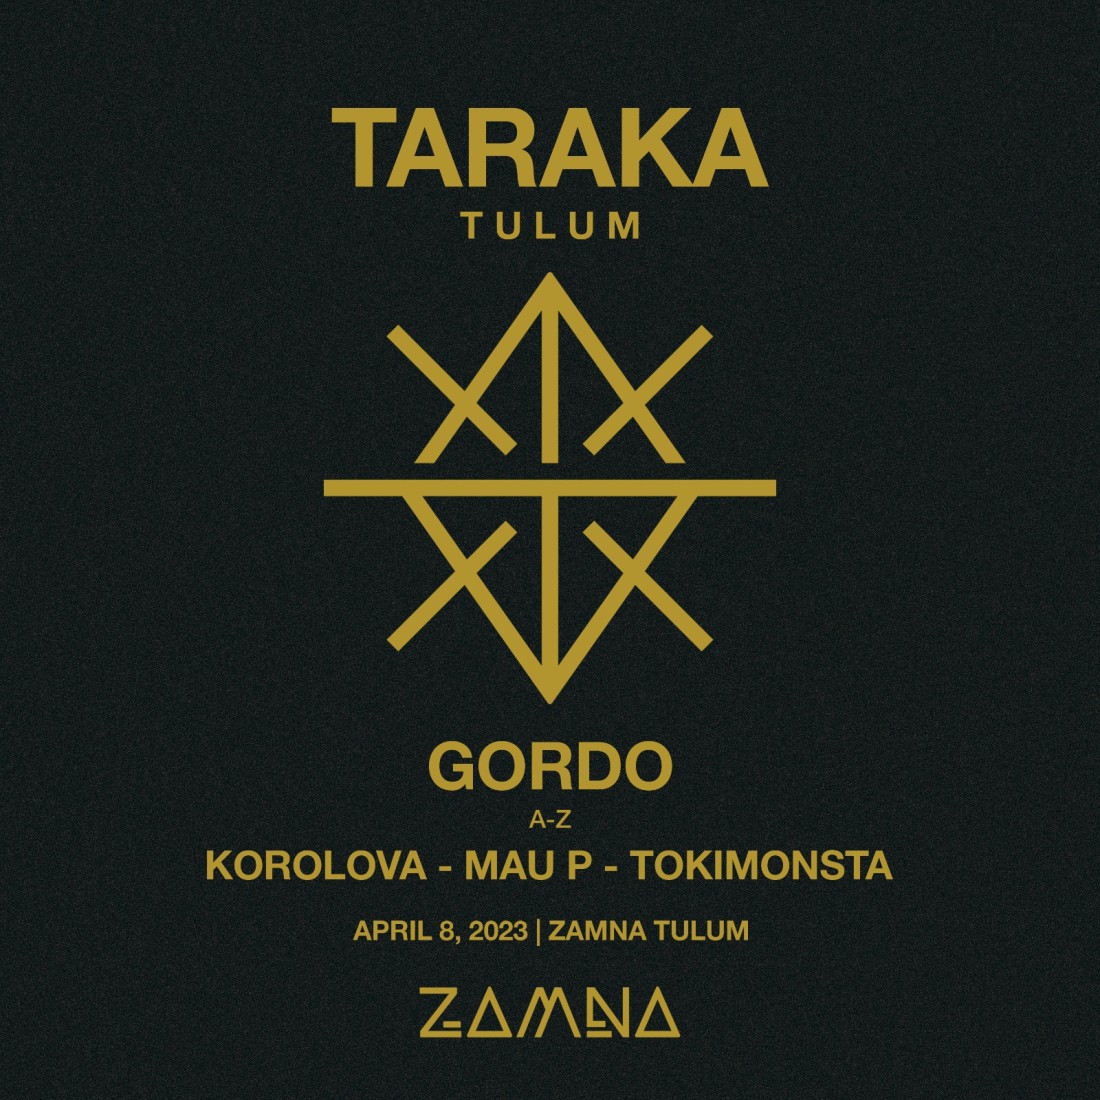 TARAKA by GORDO - Exchange Multi-pass VIP